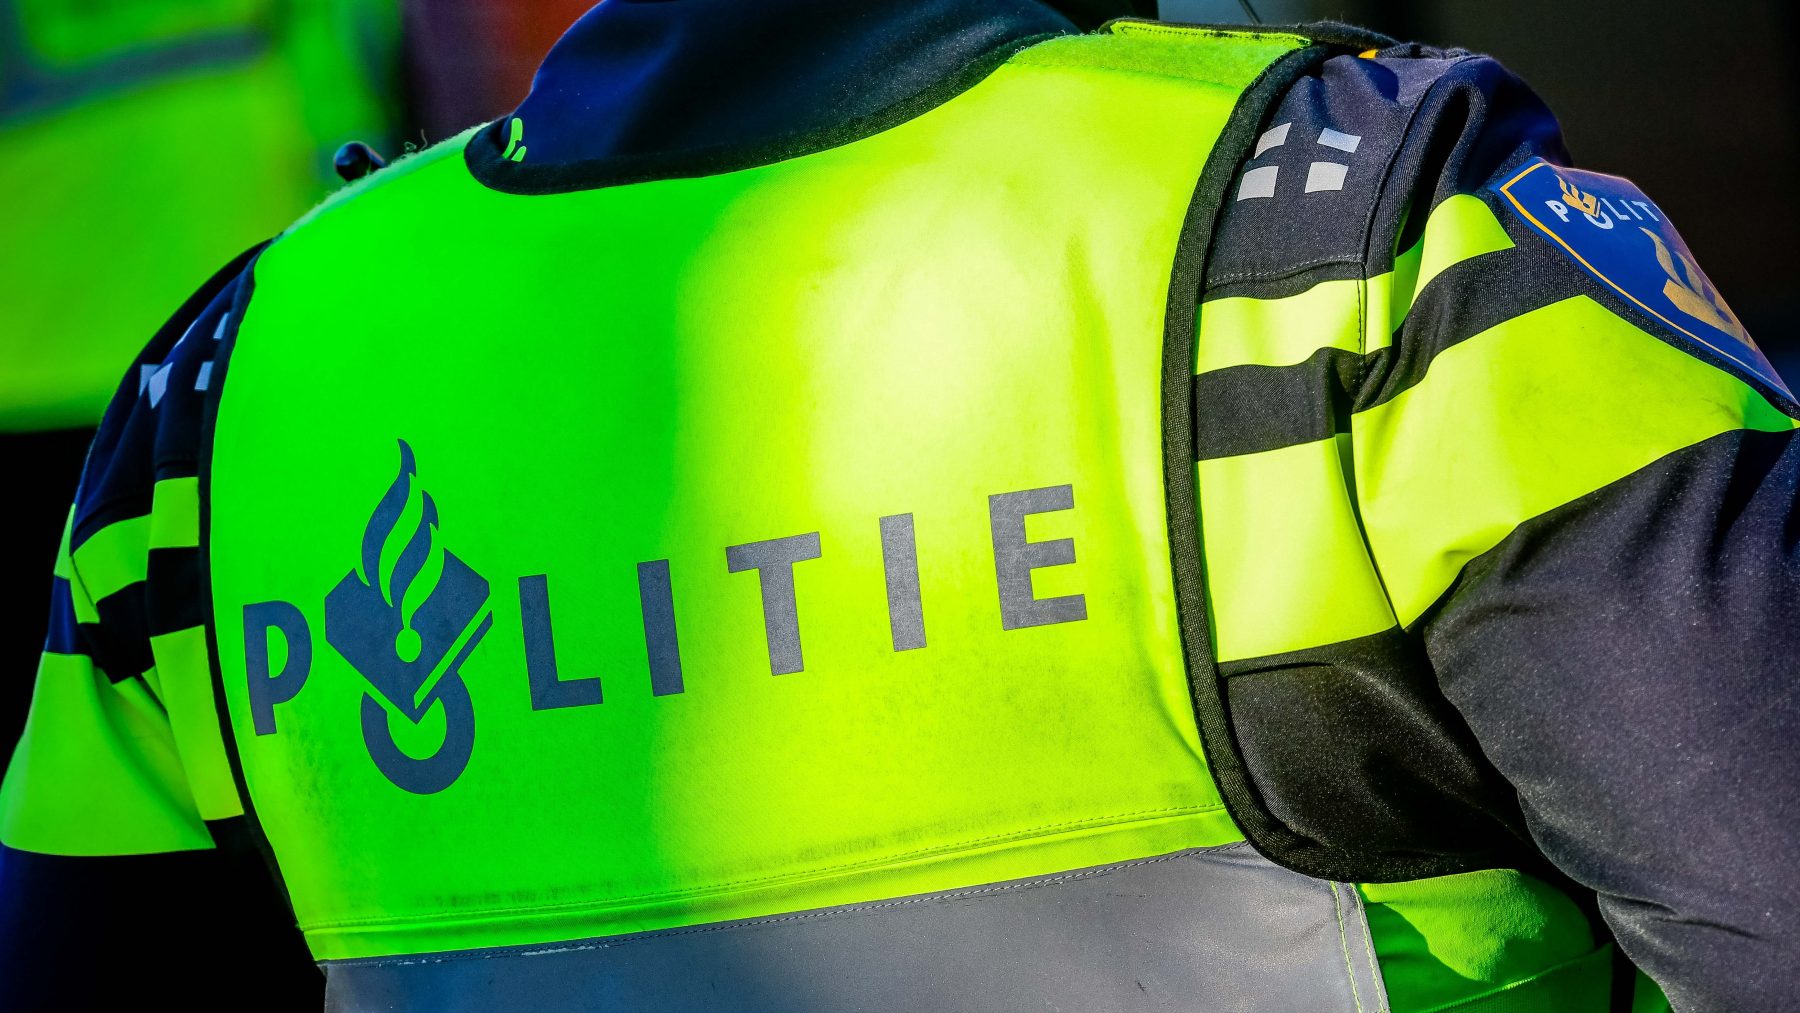 80-jarige man uit Tilburg aangehouden voor misbruik minderjarige